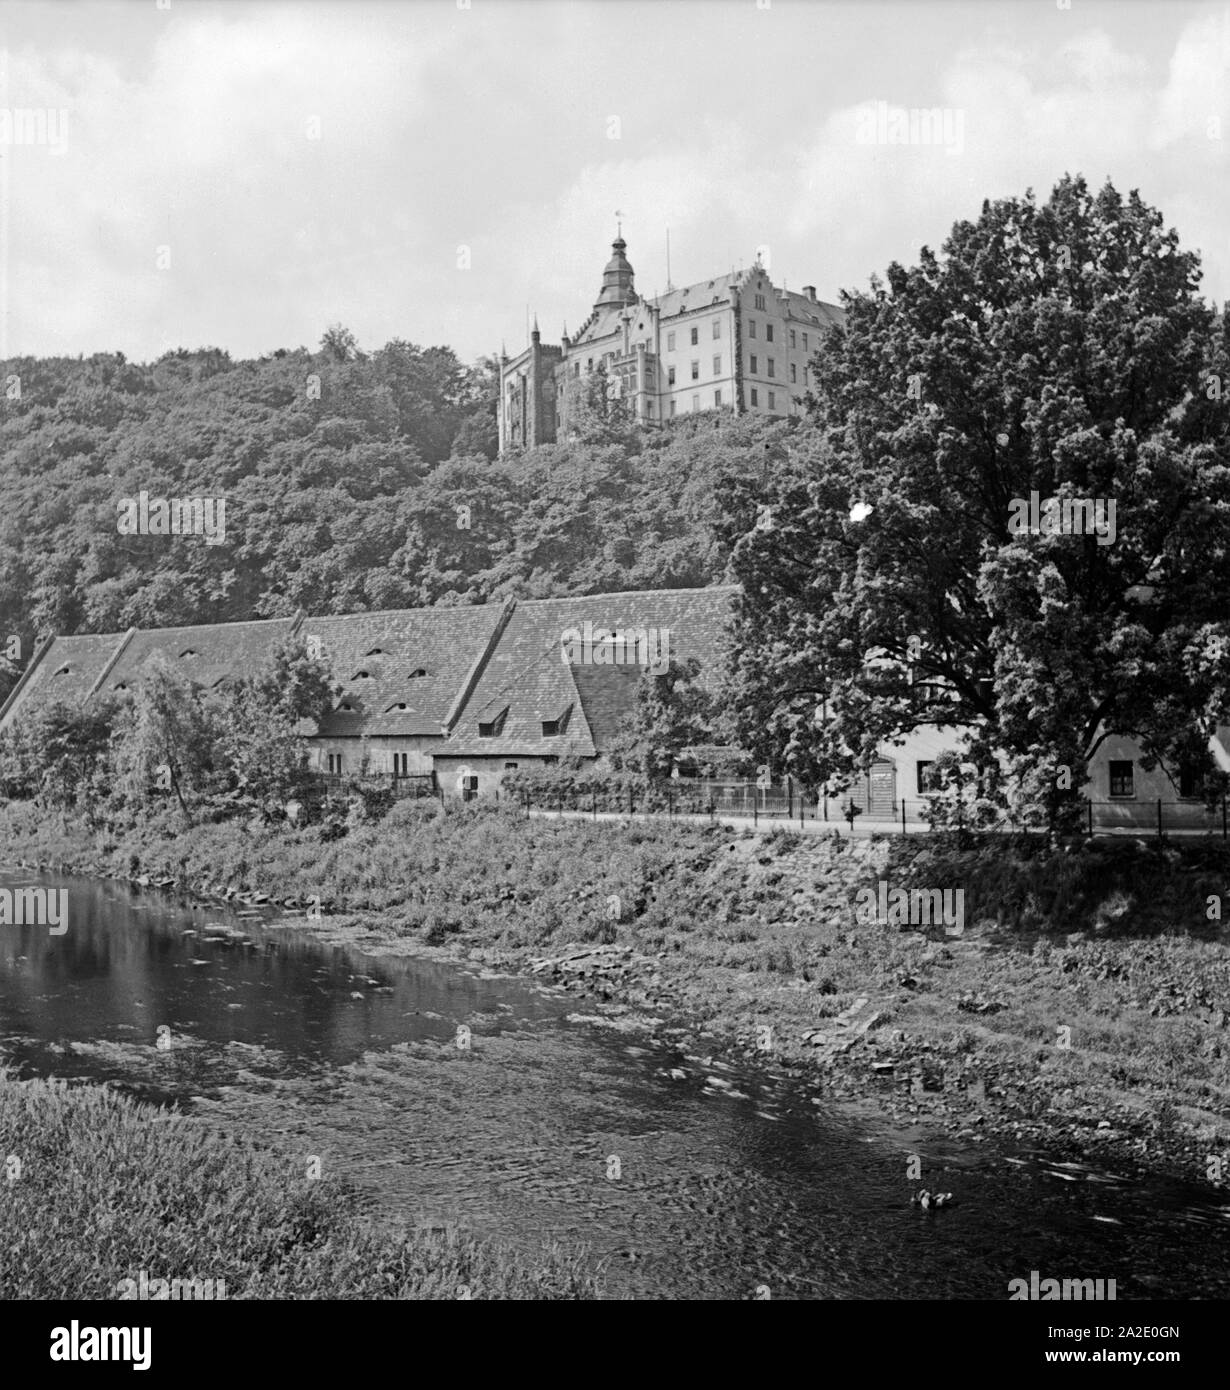 Ansicht von Schloß Osterstein à Gera, Deutschland 1930 er Jahre. Vue de château Osterstein à Gera, Allemagne 1930. Banque D'Images